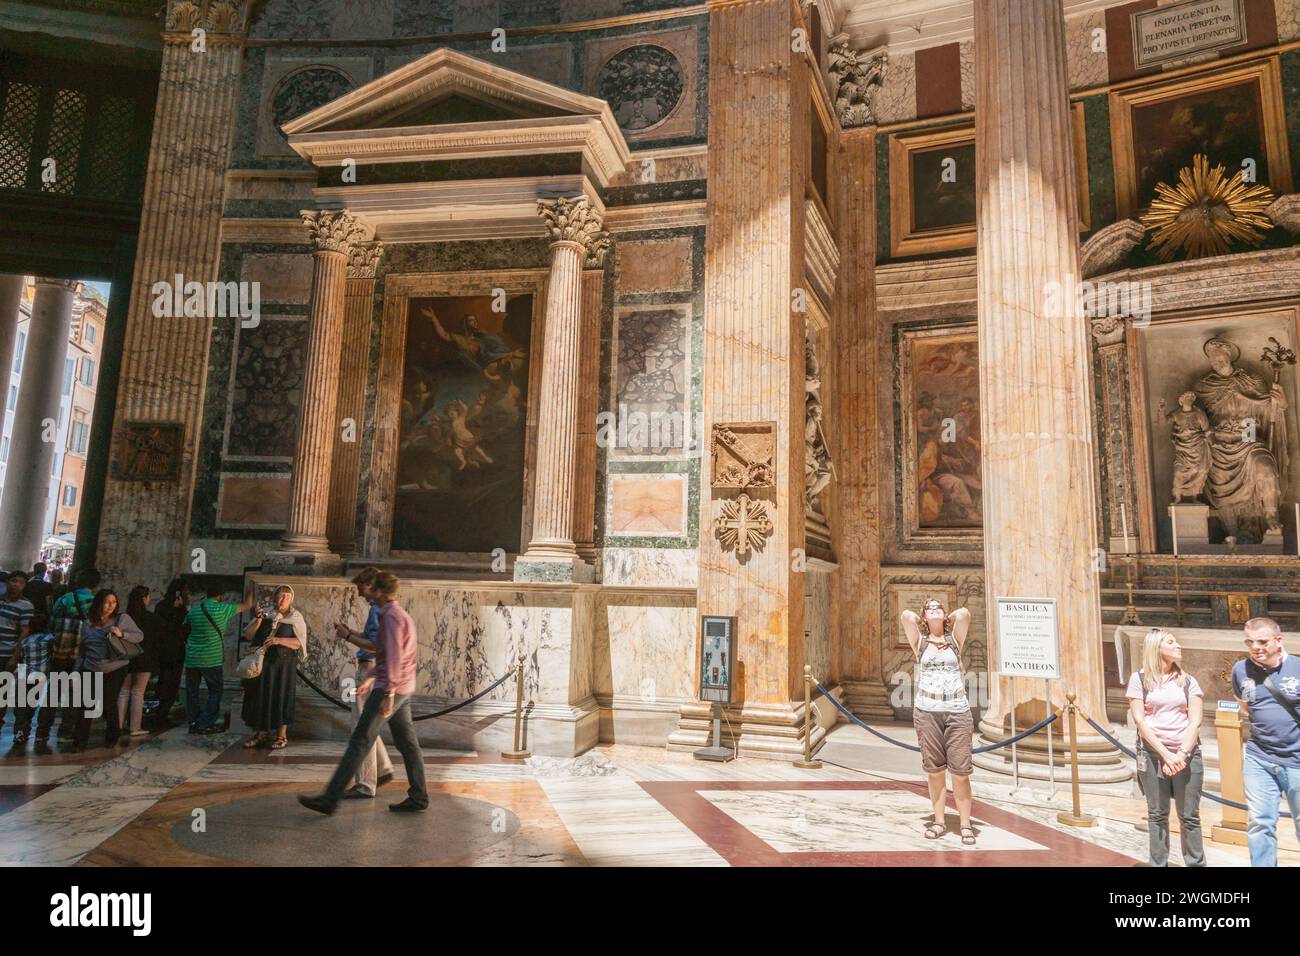 Rom Italien 20. Mai 2011; Touristen, darunter eine Frau, die in den Okkulus hinaufblickt, wo Sonnenstrahlen das Innere des 2000 Jahre alten Pantheons beleuchten. Stockfoto